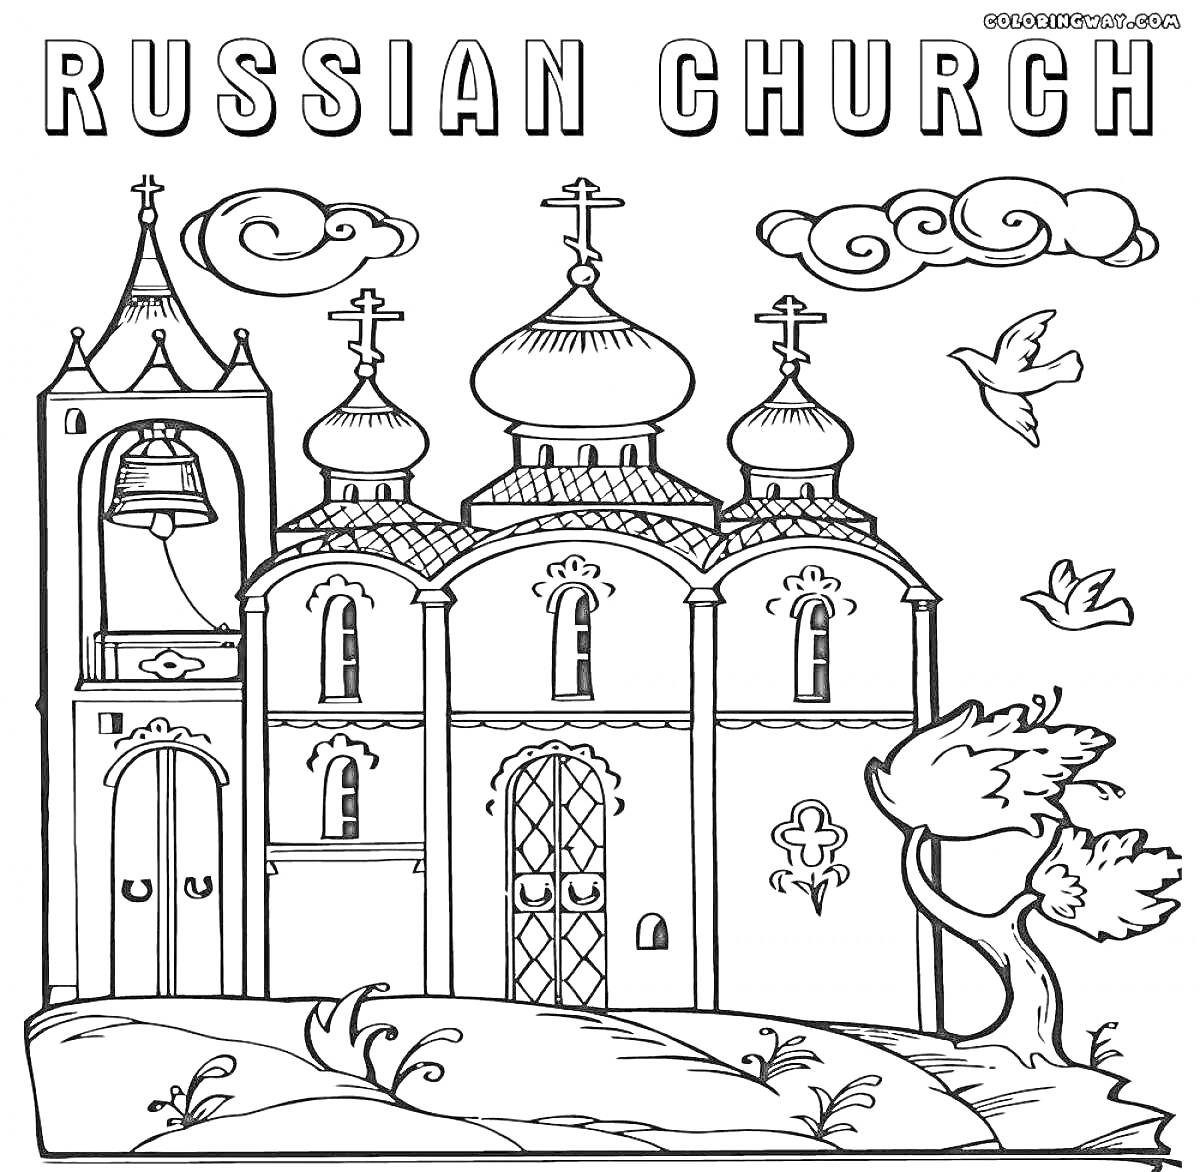 Раскраска Русская церковь с колоколами, крестами, дверью, окнами, деревом, облаками и птицами